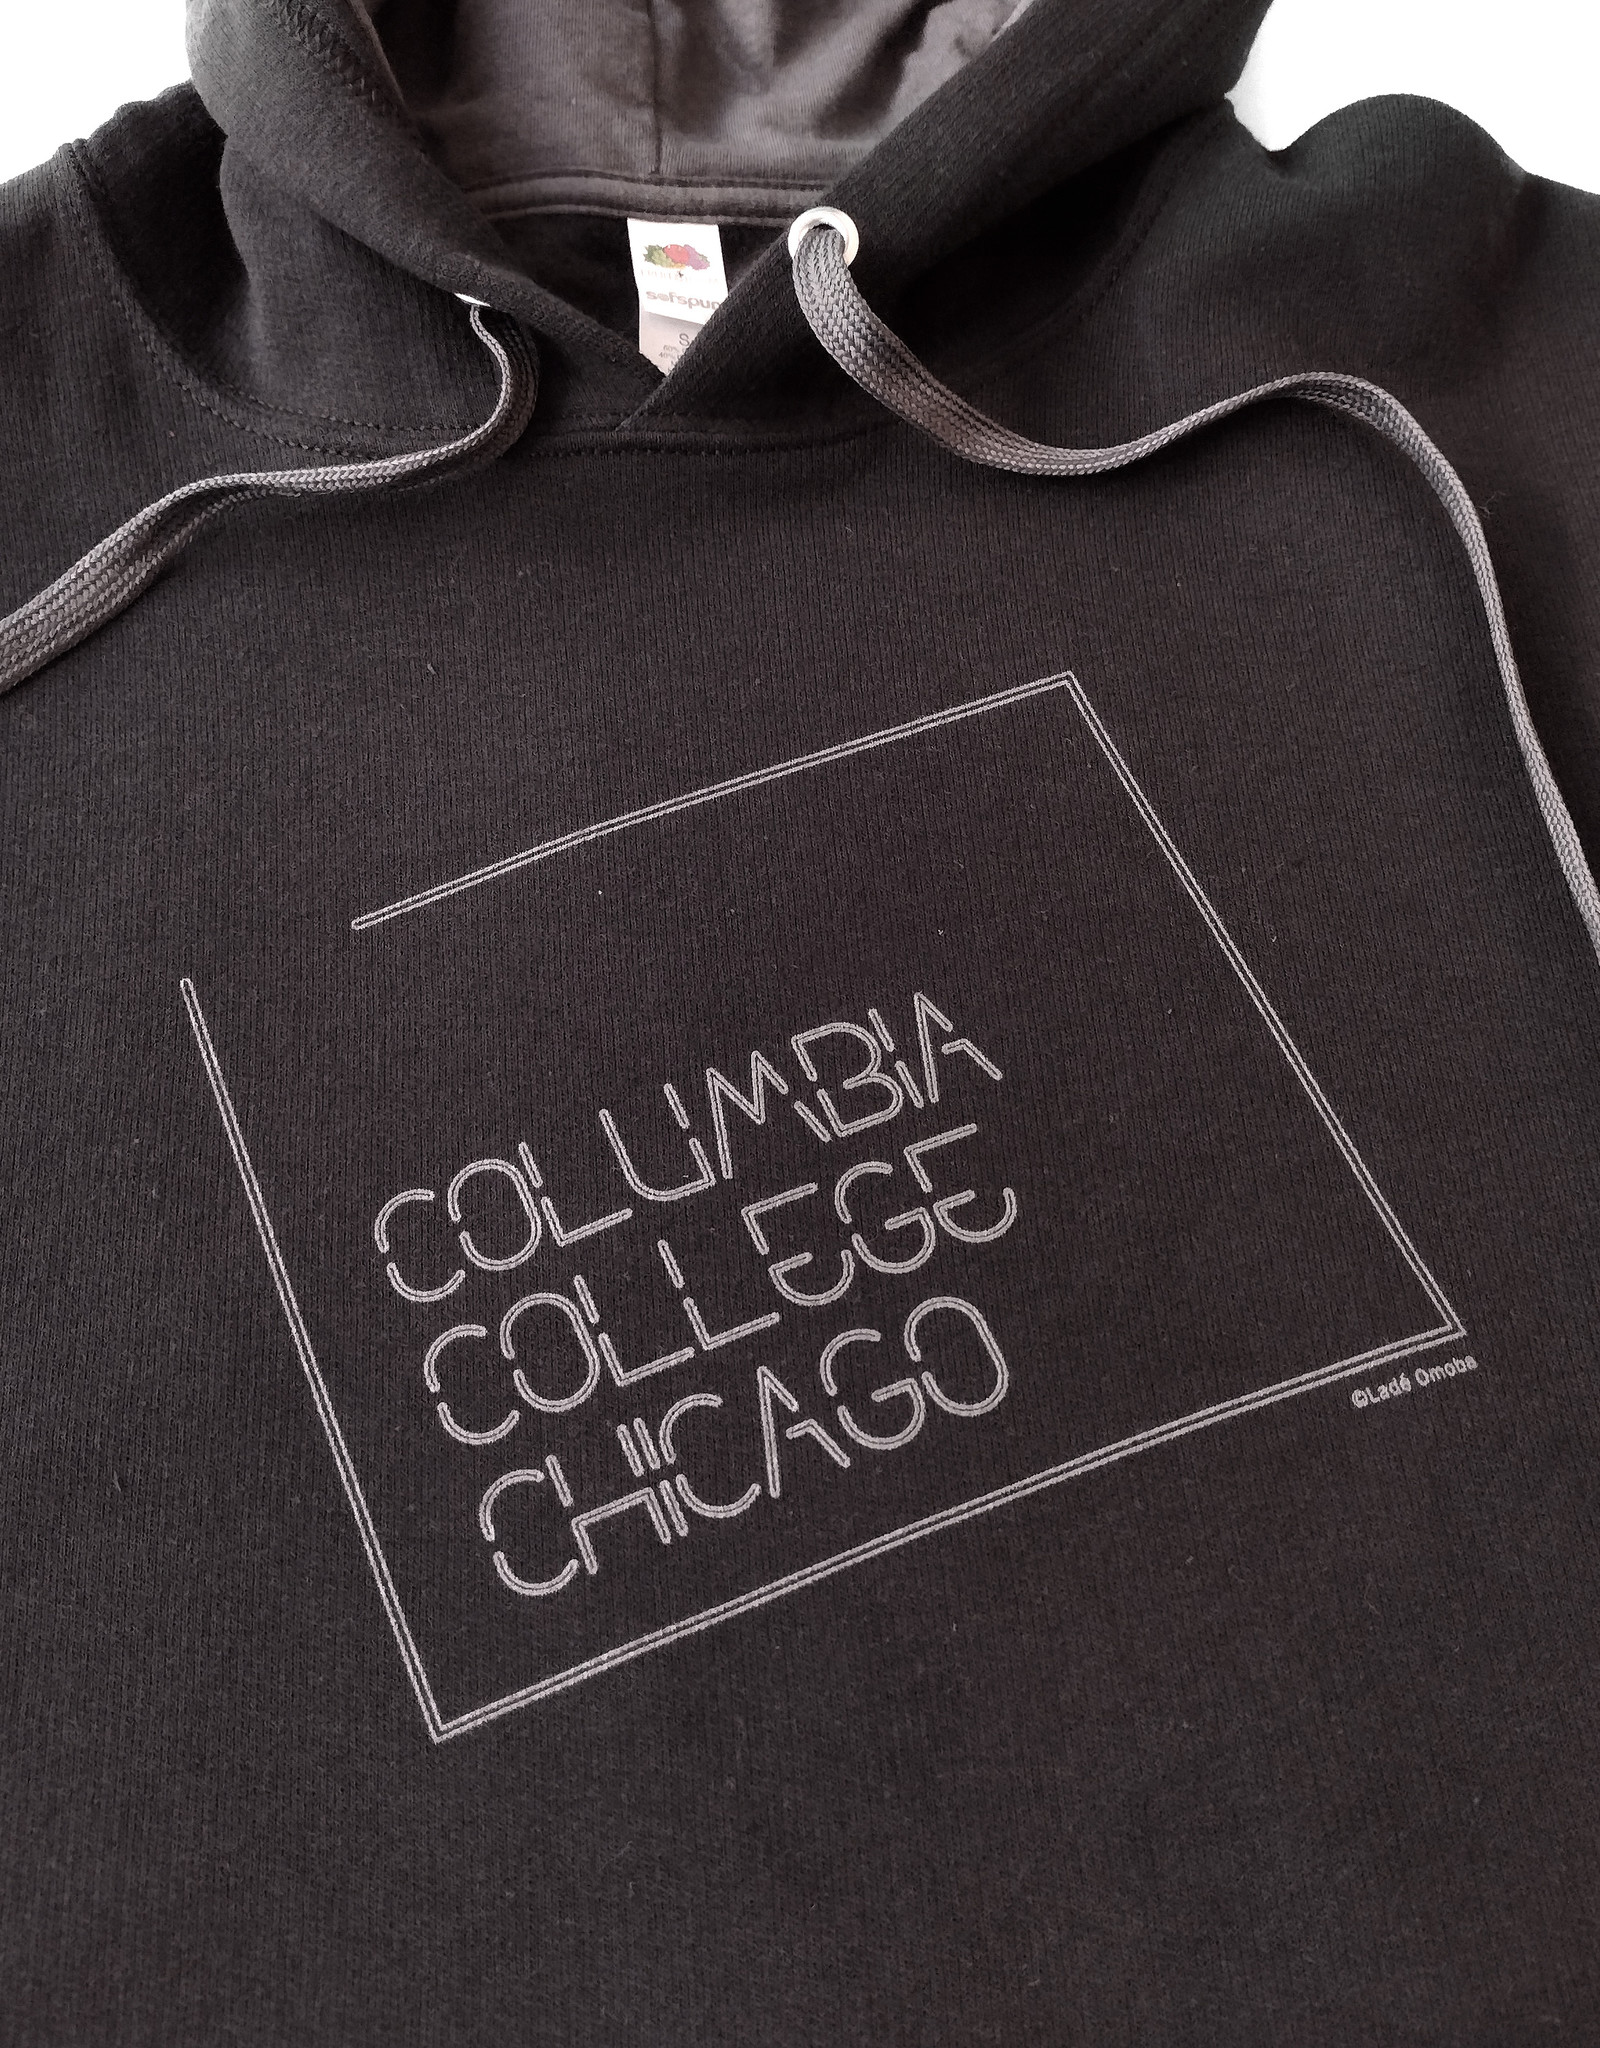 Buy Columbia, By Columbia NEW: Columbia Black Hooded Sweatshirt